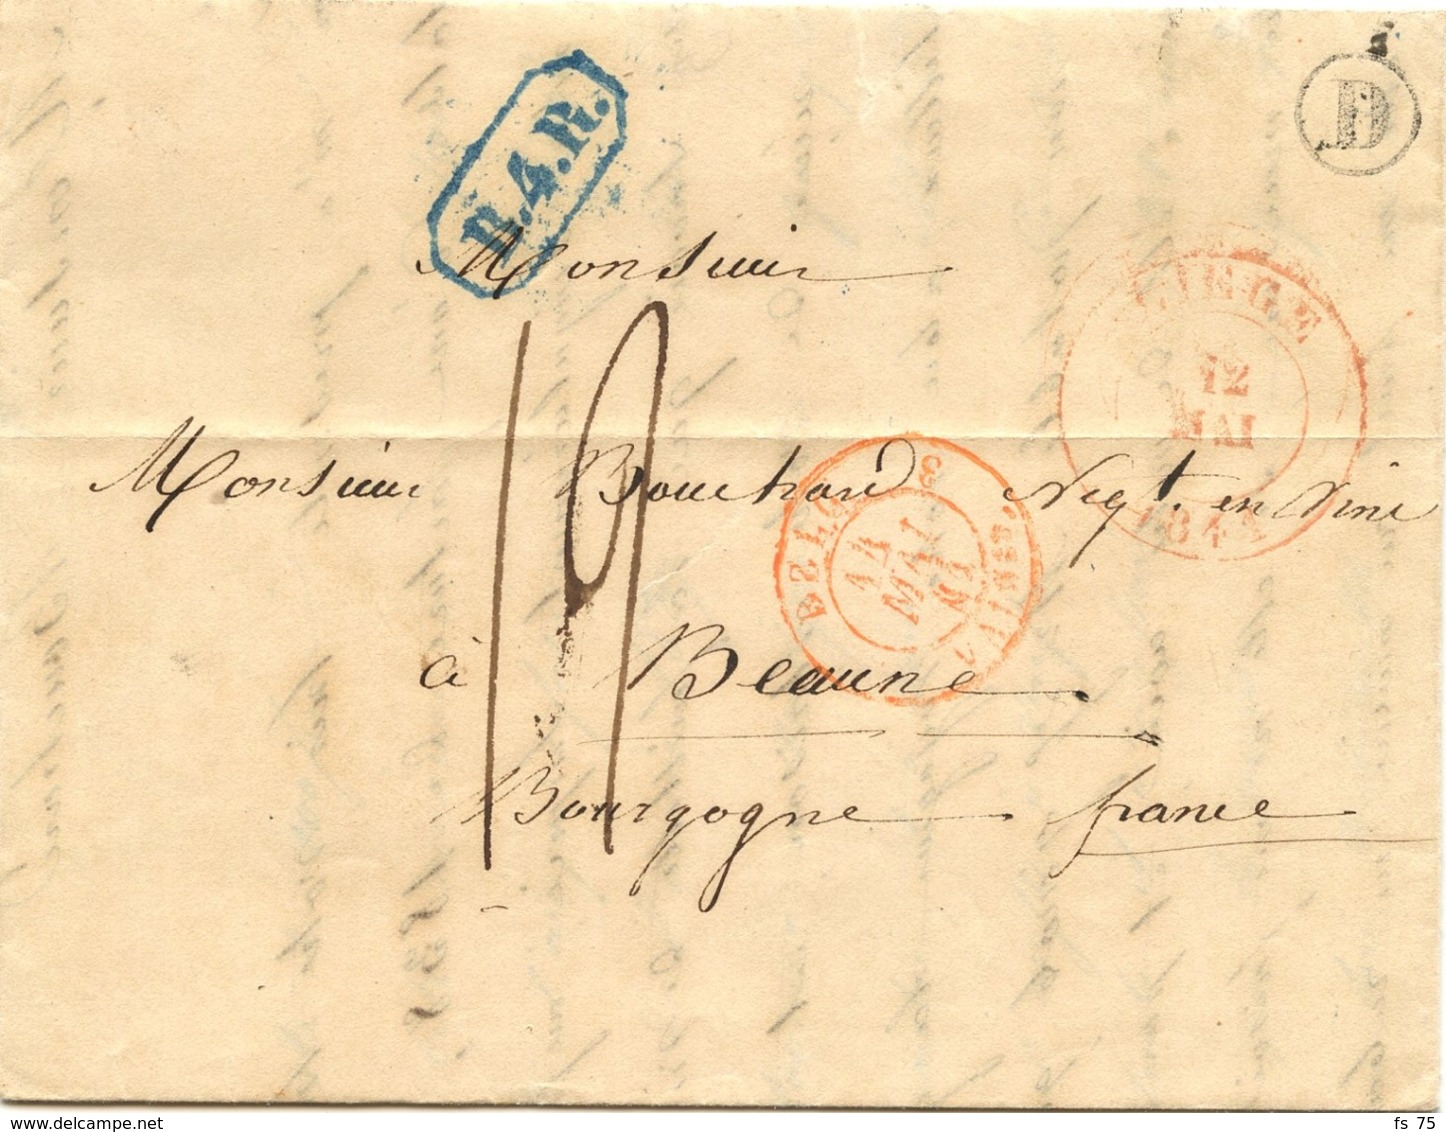 BELGIQUE - CAD LIEGE + BOITE D  SUR LETTRE AVEC TEXTE DE CHENEE  POUR LA FRANCE, 1841 - 1714-1794 (Pays-Bas Autrichiens)